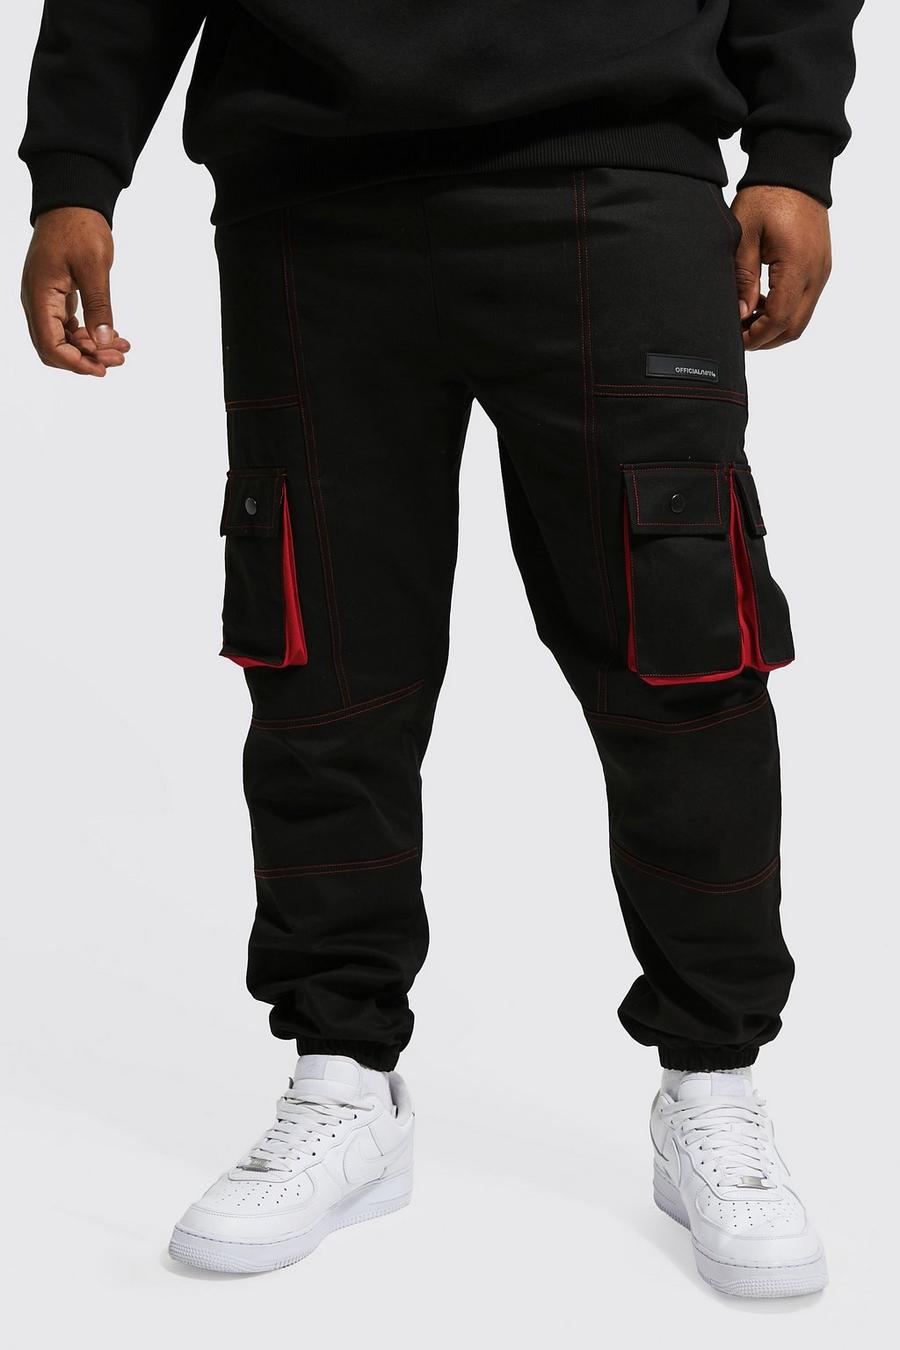 Pantaloni Cargo Plus Size Slim Fit con dettagli a contrasto, Black nero